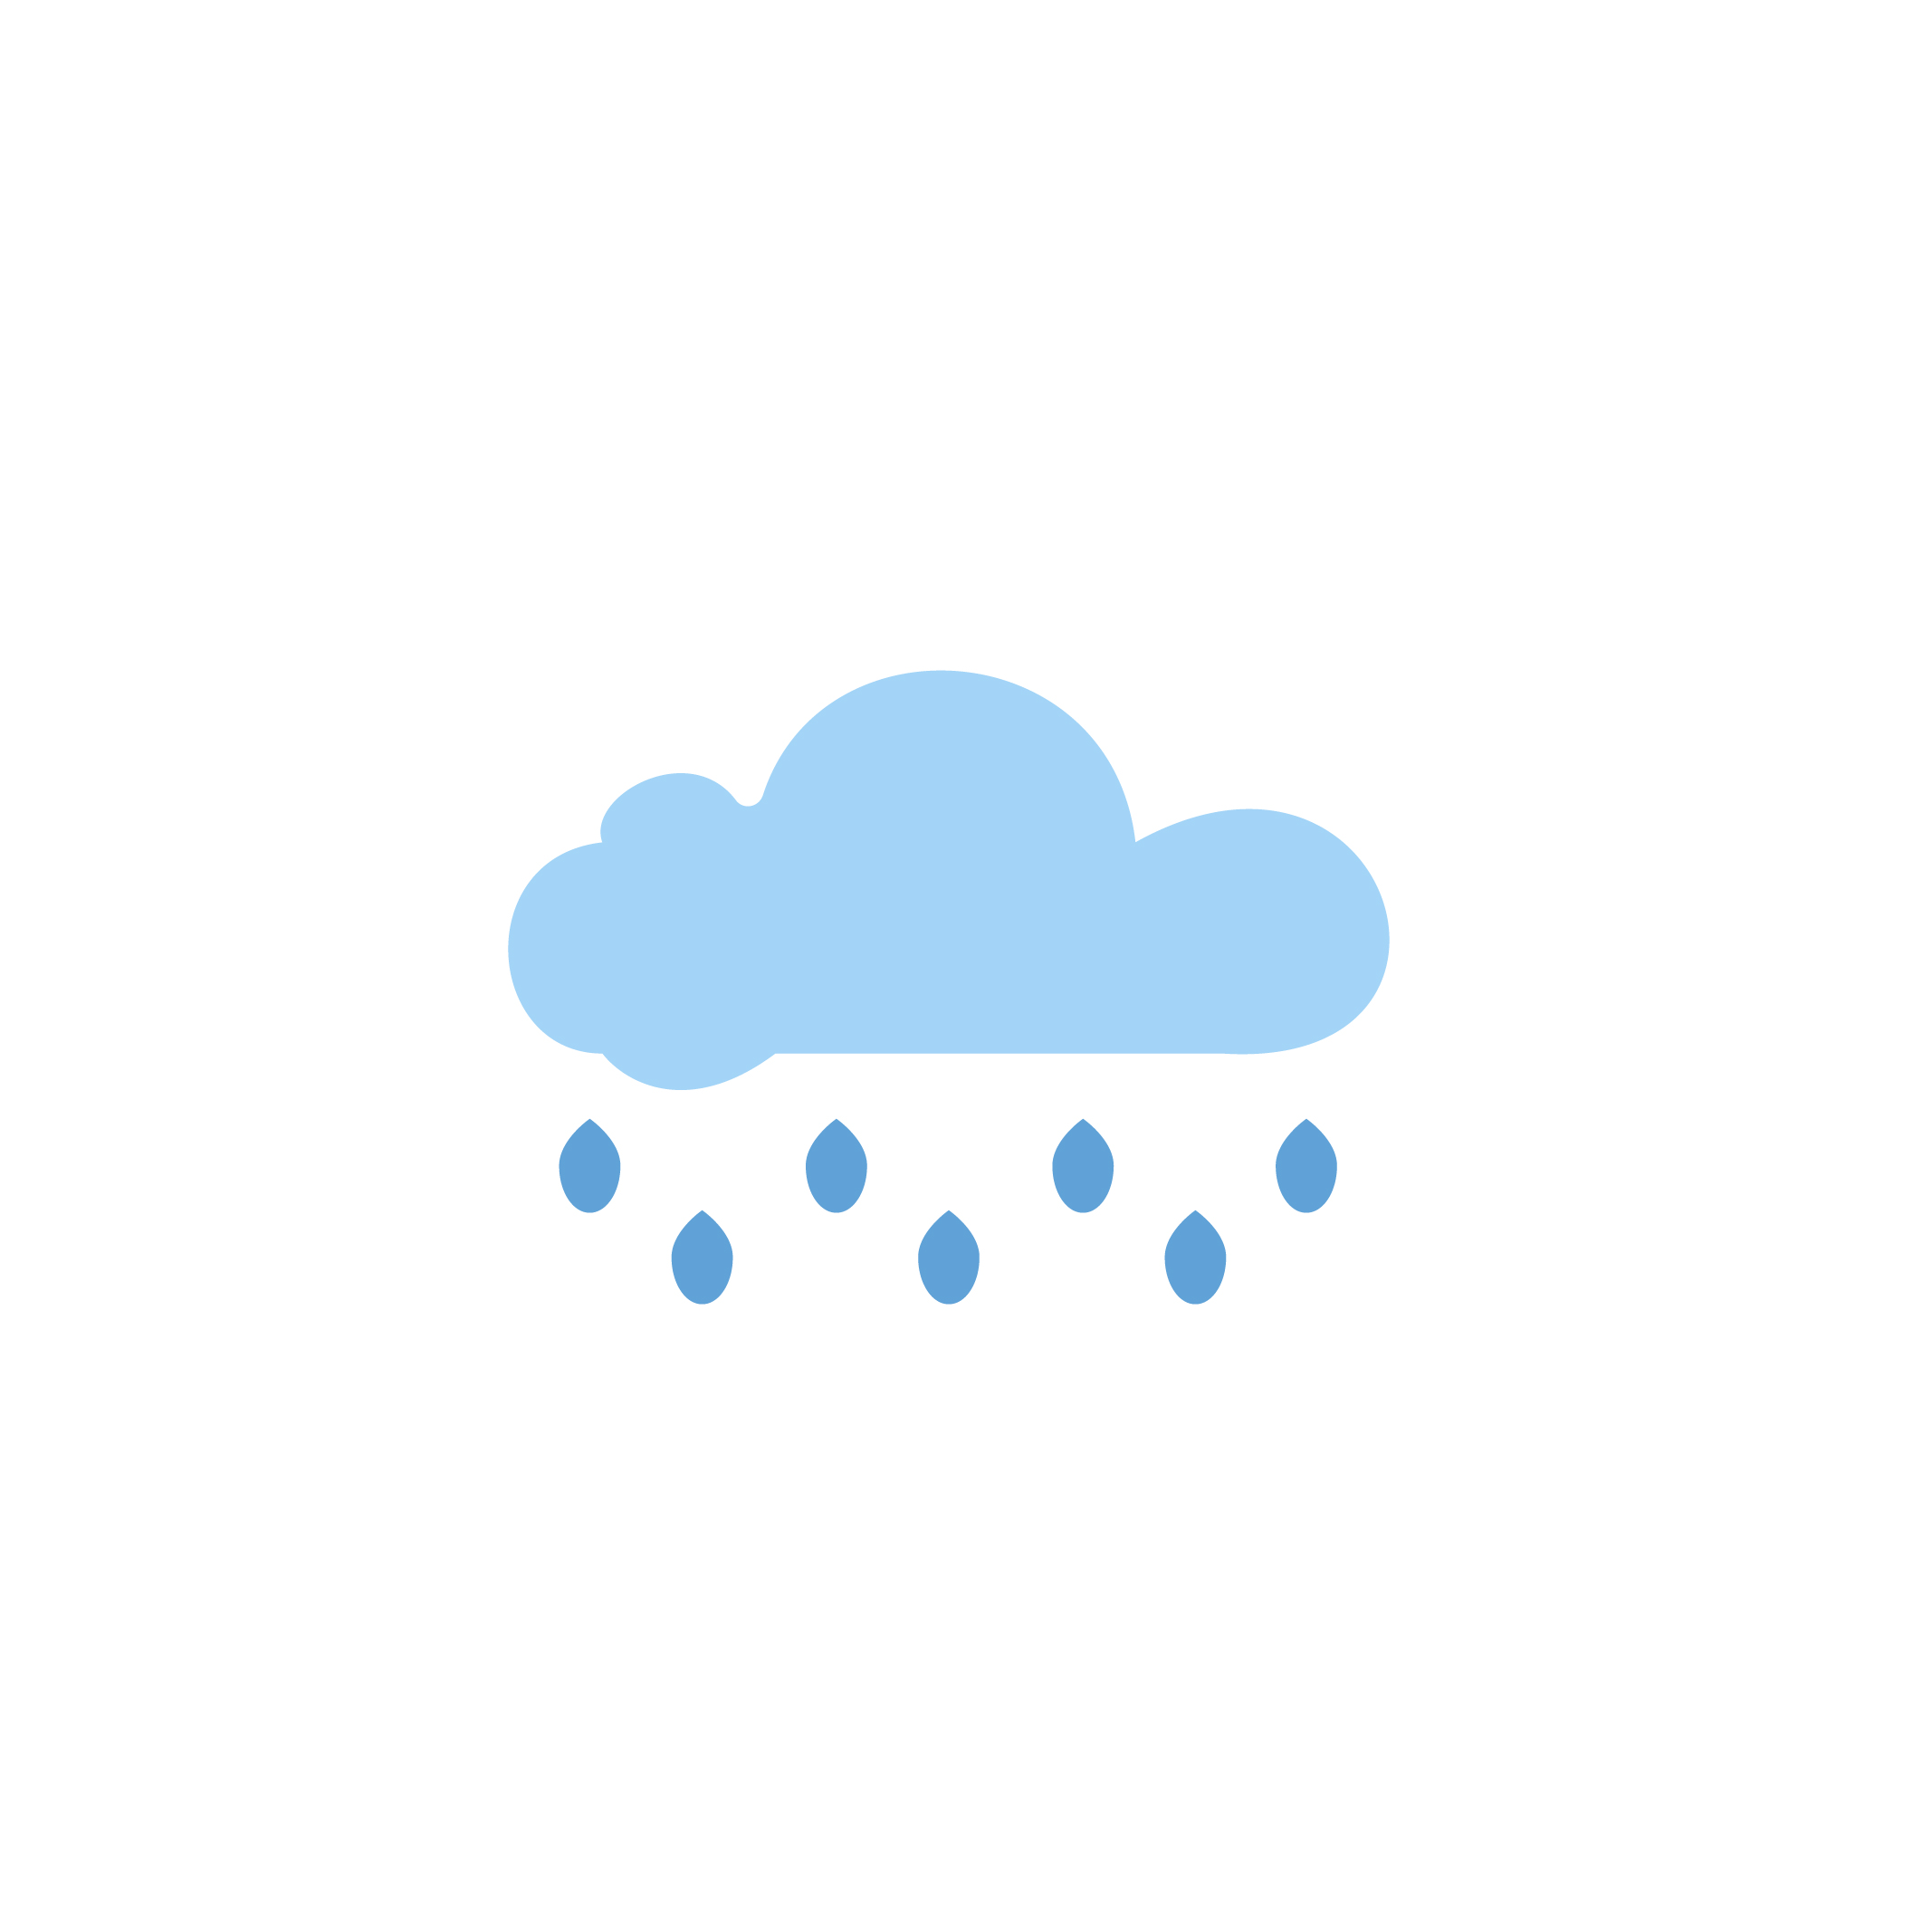 Solid Weather Icons Bundle rain.